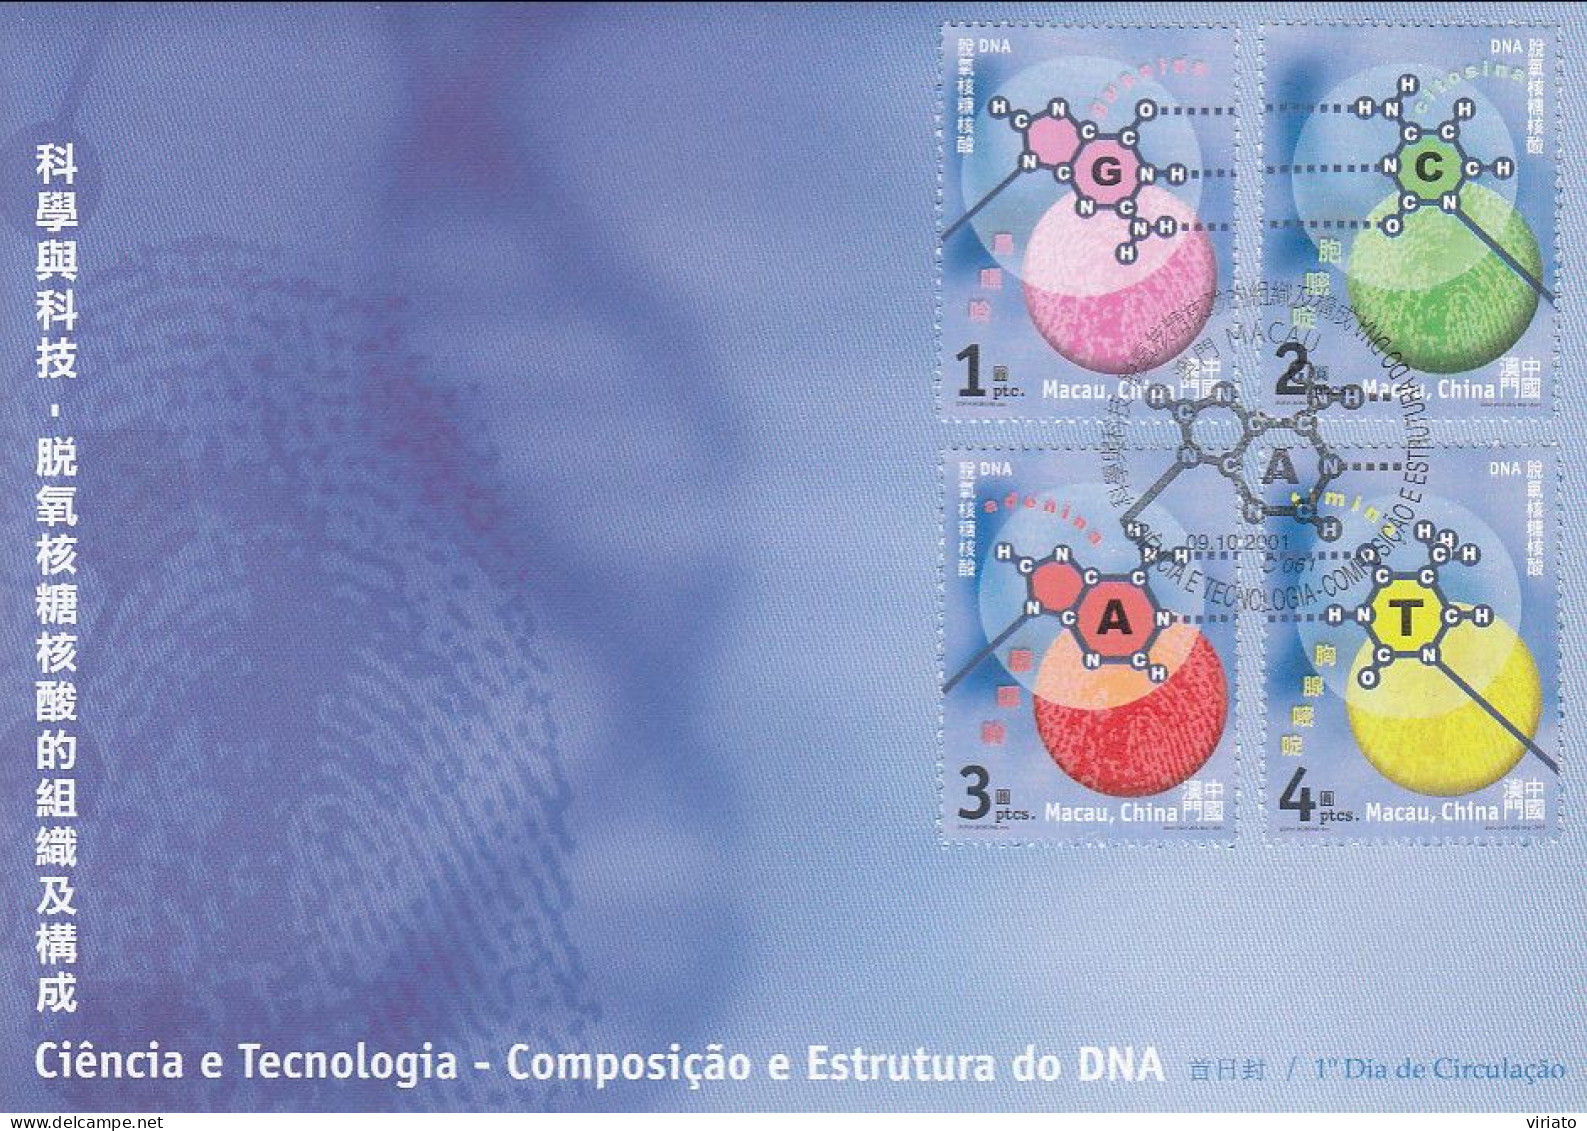 ENA022 - Ciência E Tecnologia - Composição E Estrutura Do DNA - 09.10.2001 - FDC